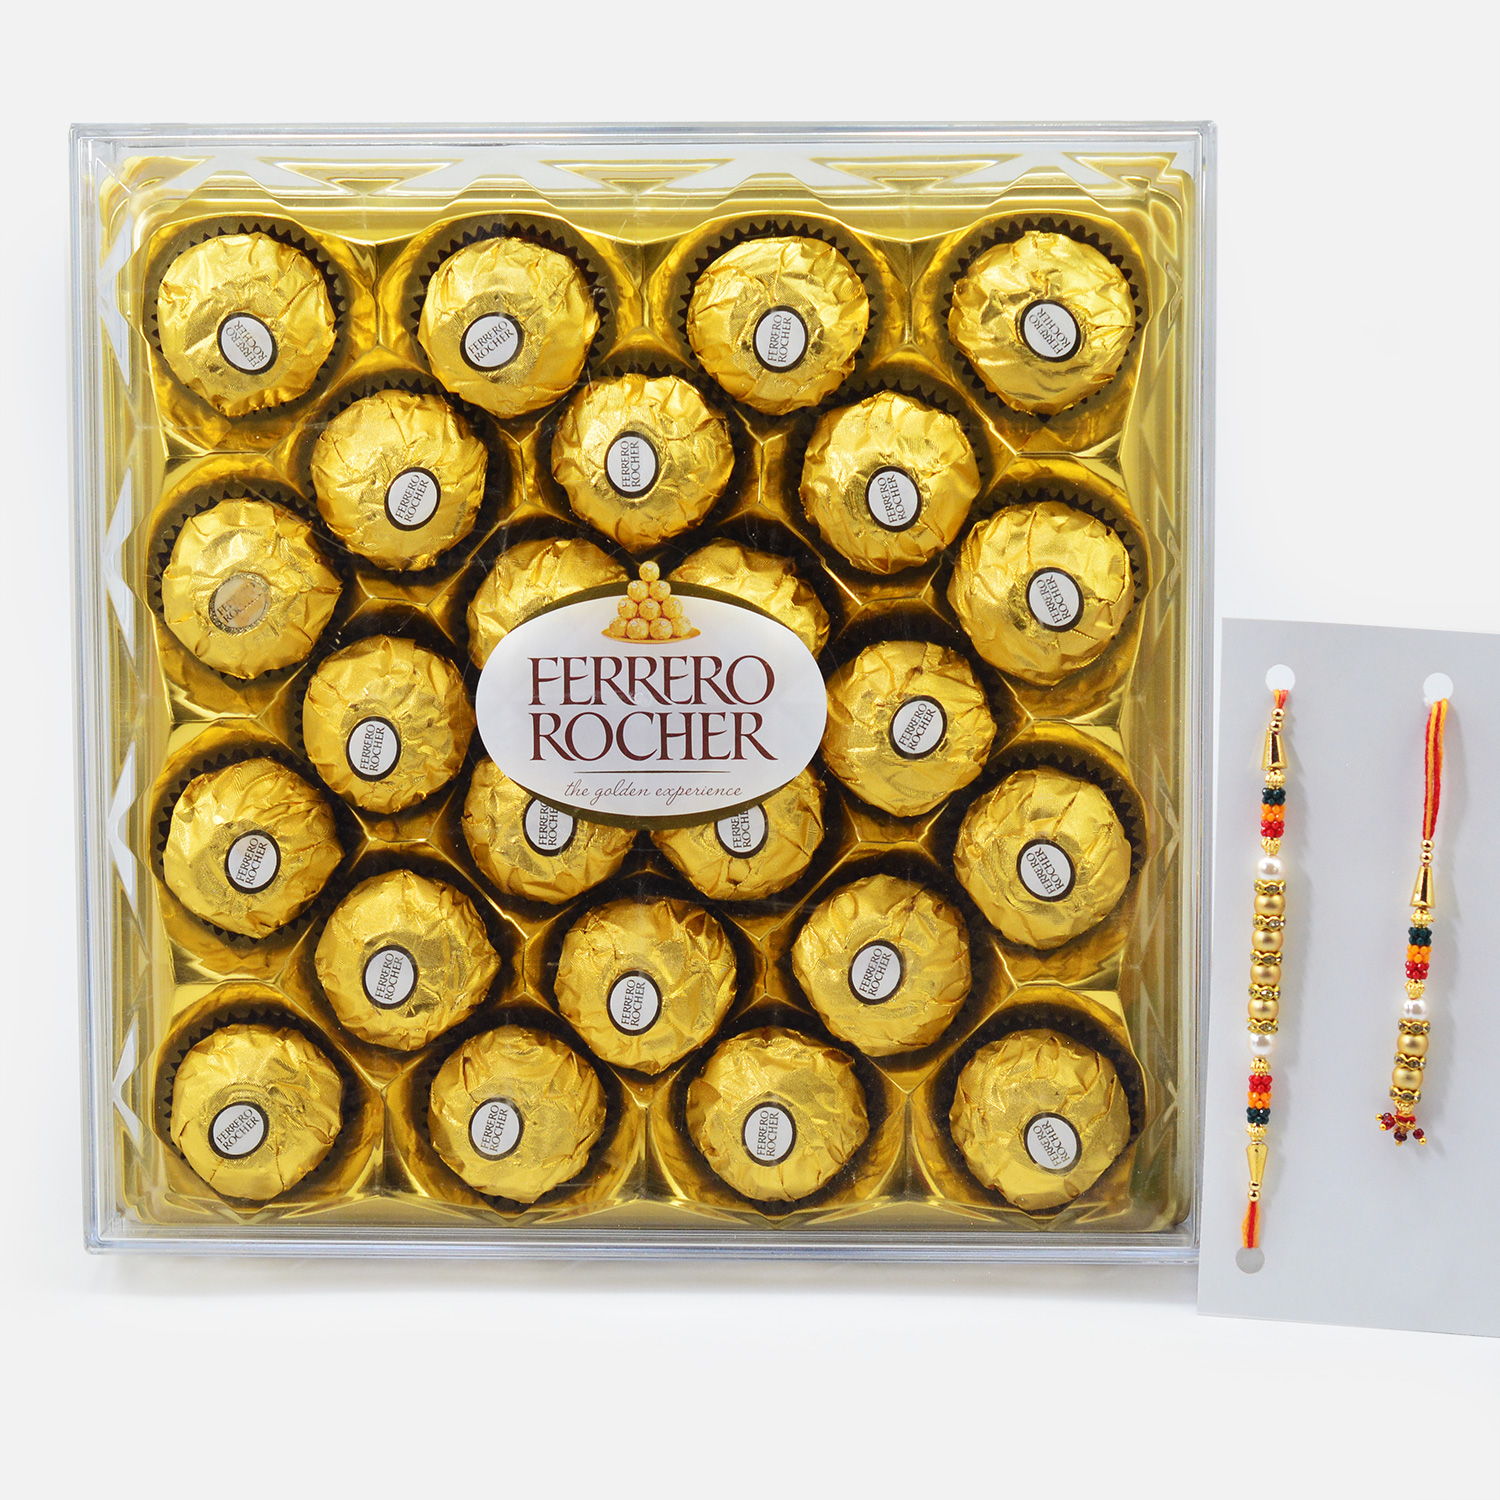 Golden Beads Design Bhaiya Bhabhi Rakhis with Ferrero Rocher 24 Pc Chocolate